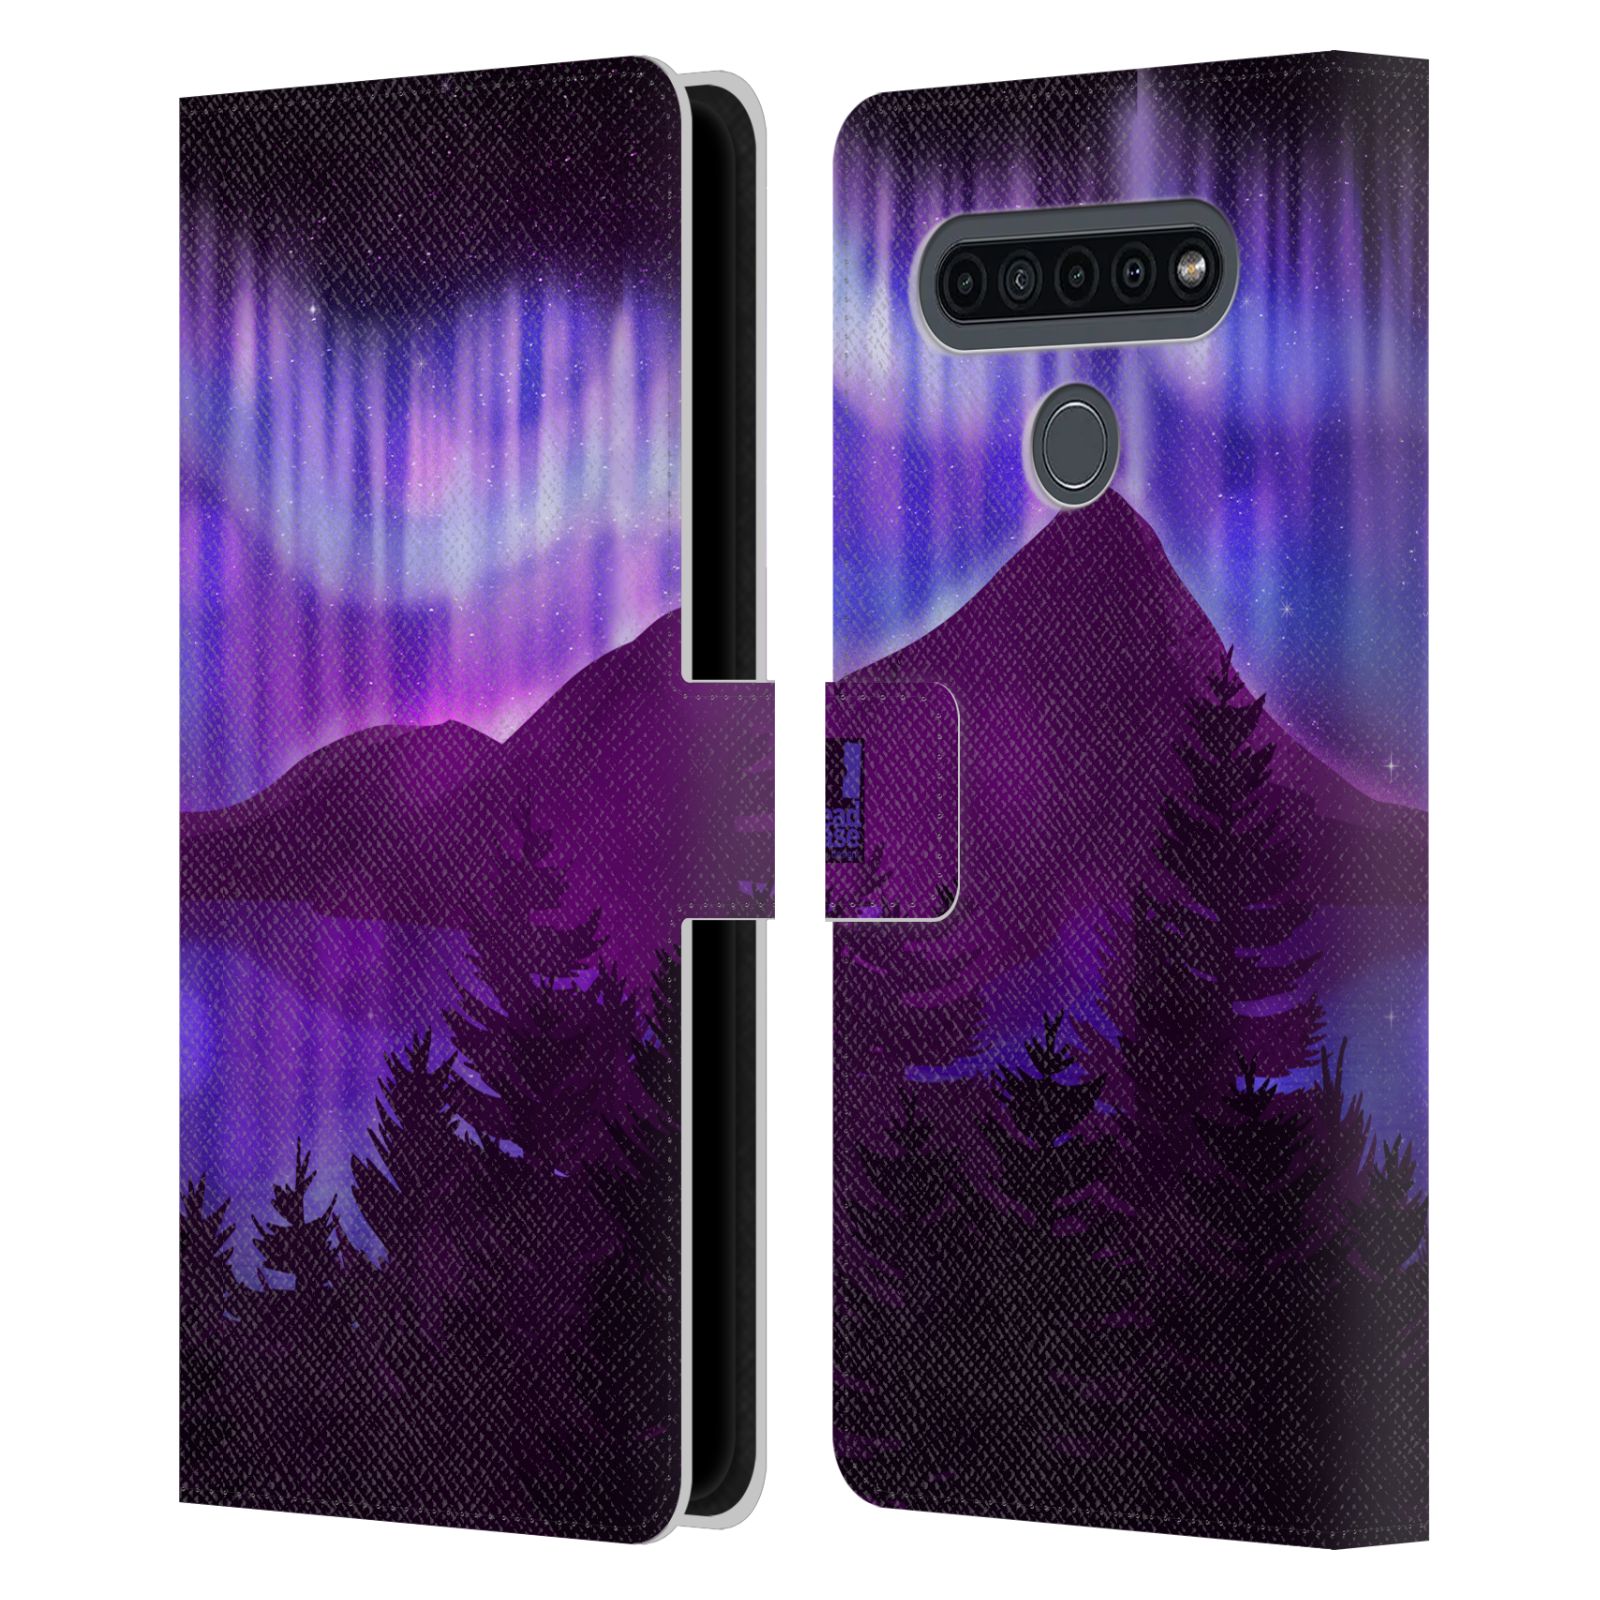 Pouzdro na mobil LG K41s  - HEAD CASE - Hory a lesy fialový odstín